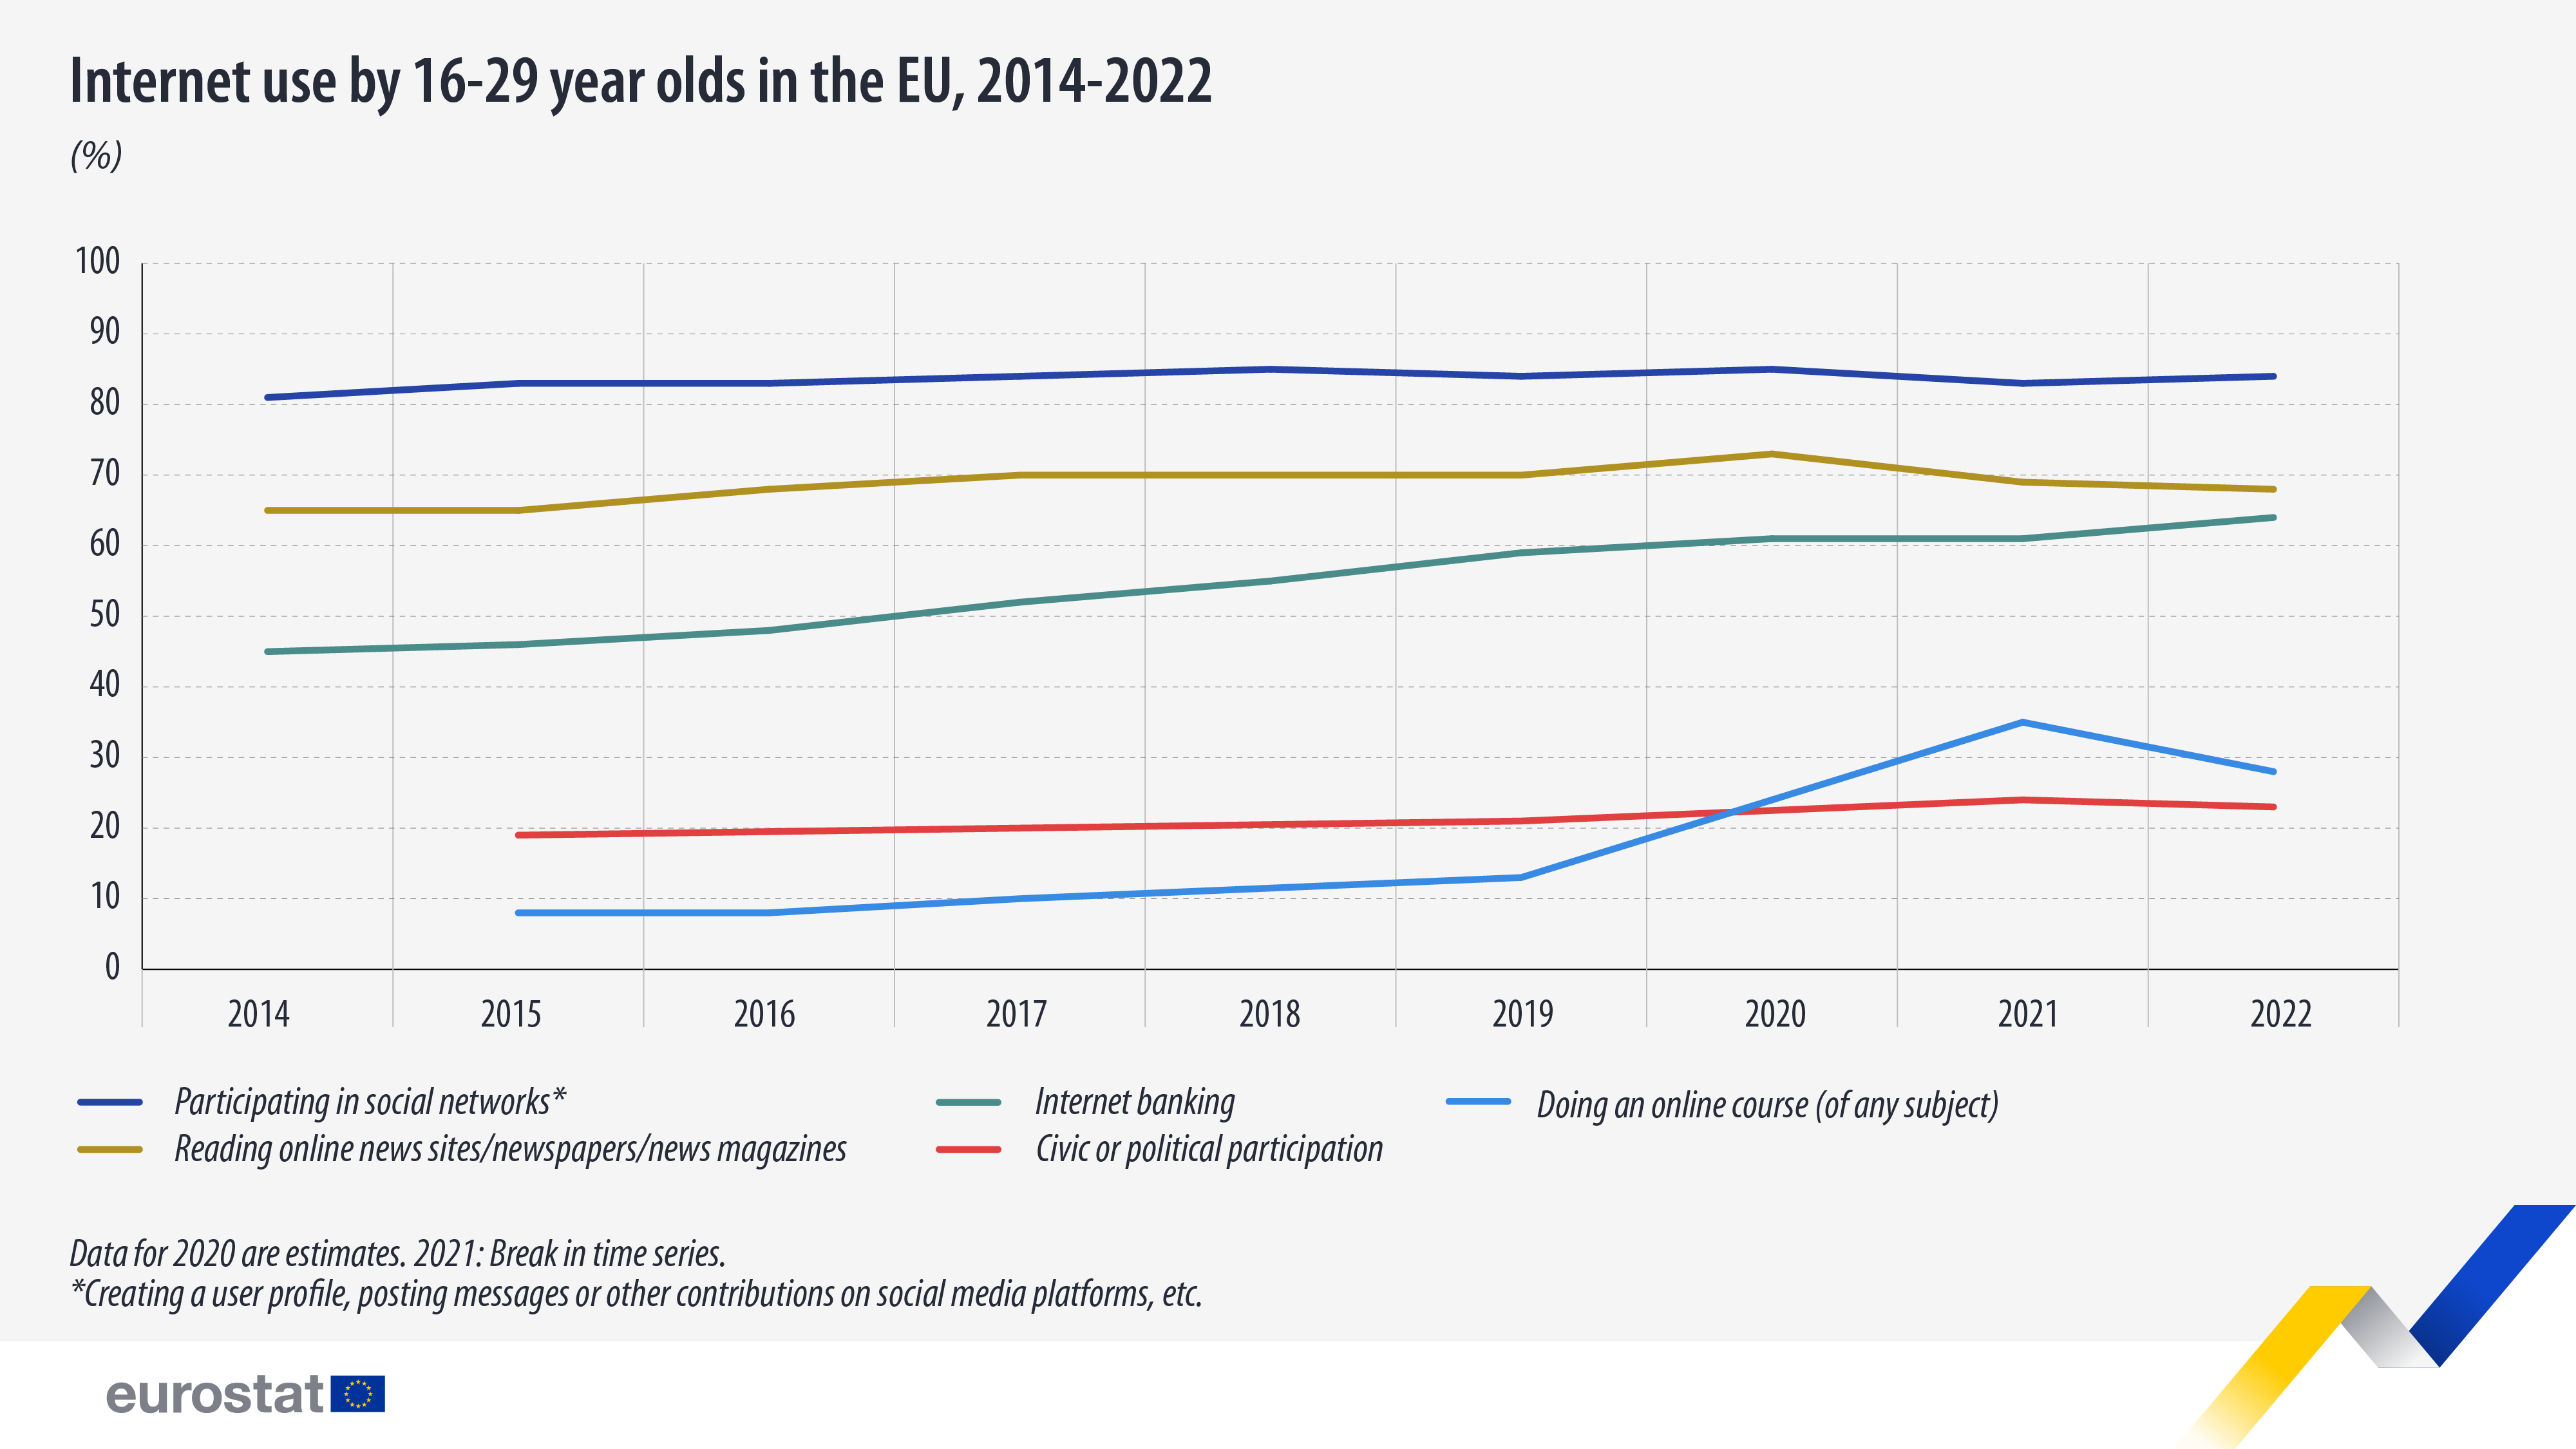 γράφημα χρονοδιαγράμματος: χρήση του διαδικτύου από νέους 16-29 ετών στην ΕΕ, 2014-2022, σε %, συμμετοχή σε κοινωνικά δίκτυα με μπλε χρώμα, διαδικτυακή τραπεζική με μπλε χρώμα, παρακολούθηση διαδικτυακού μαθήματος με μπλε χρώμα, ανάγνωση διαδικτυακών ειδήσεων σε χρυσοκίτρινο και αστικό ή η πολιτική συμμετοχή στα κόκκινα.